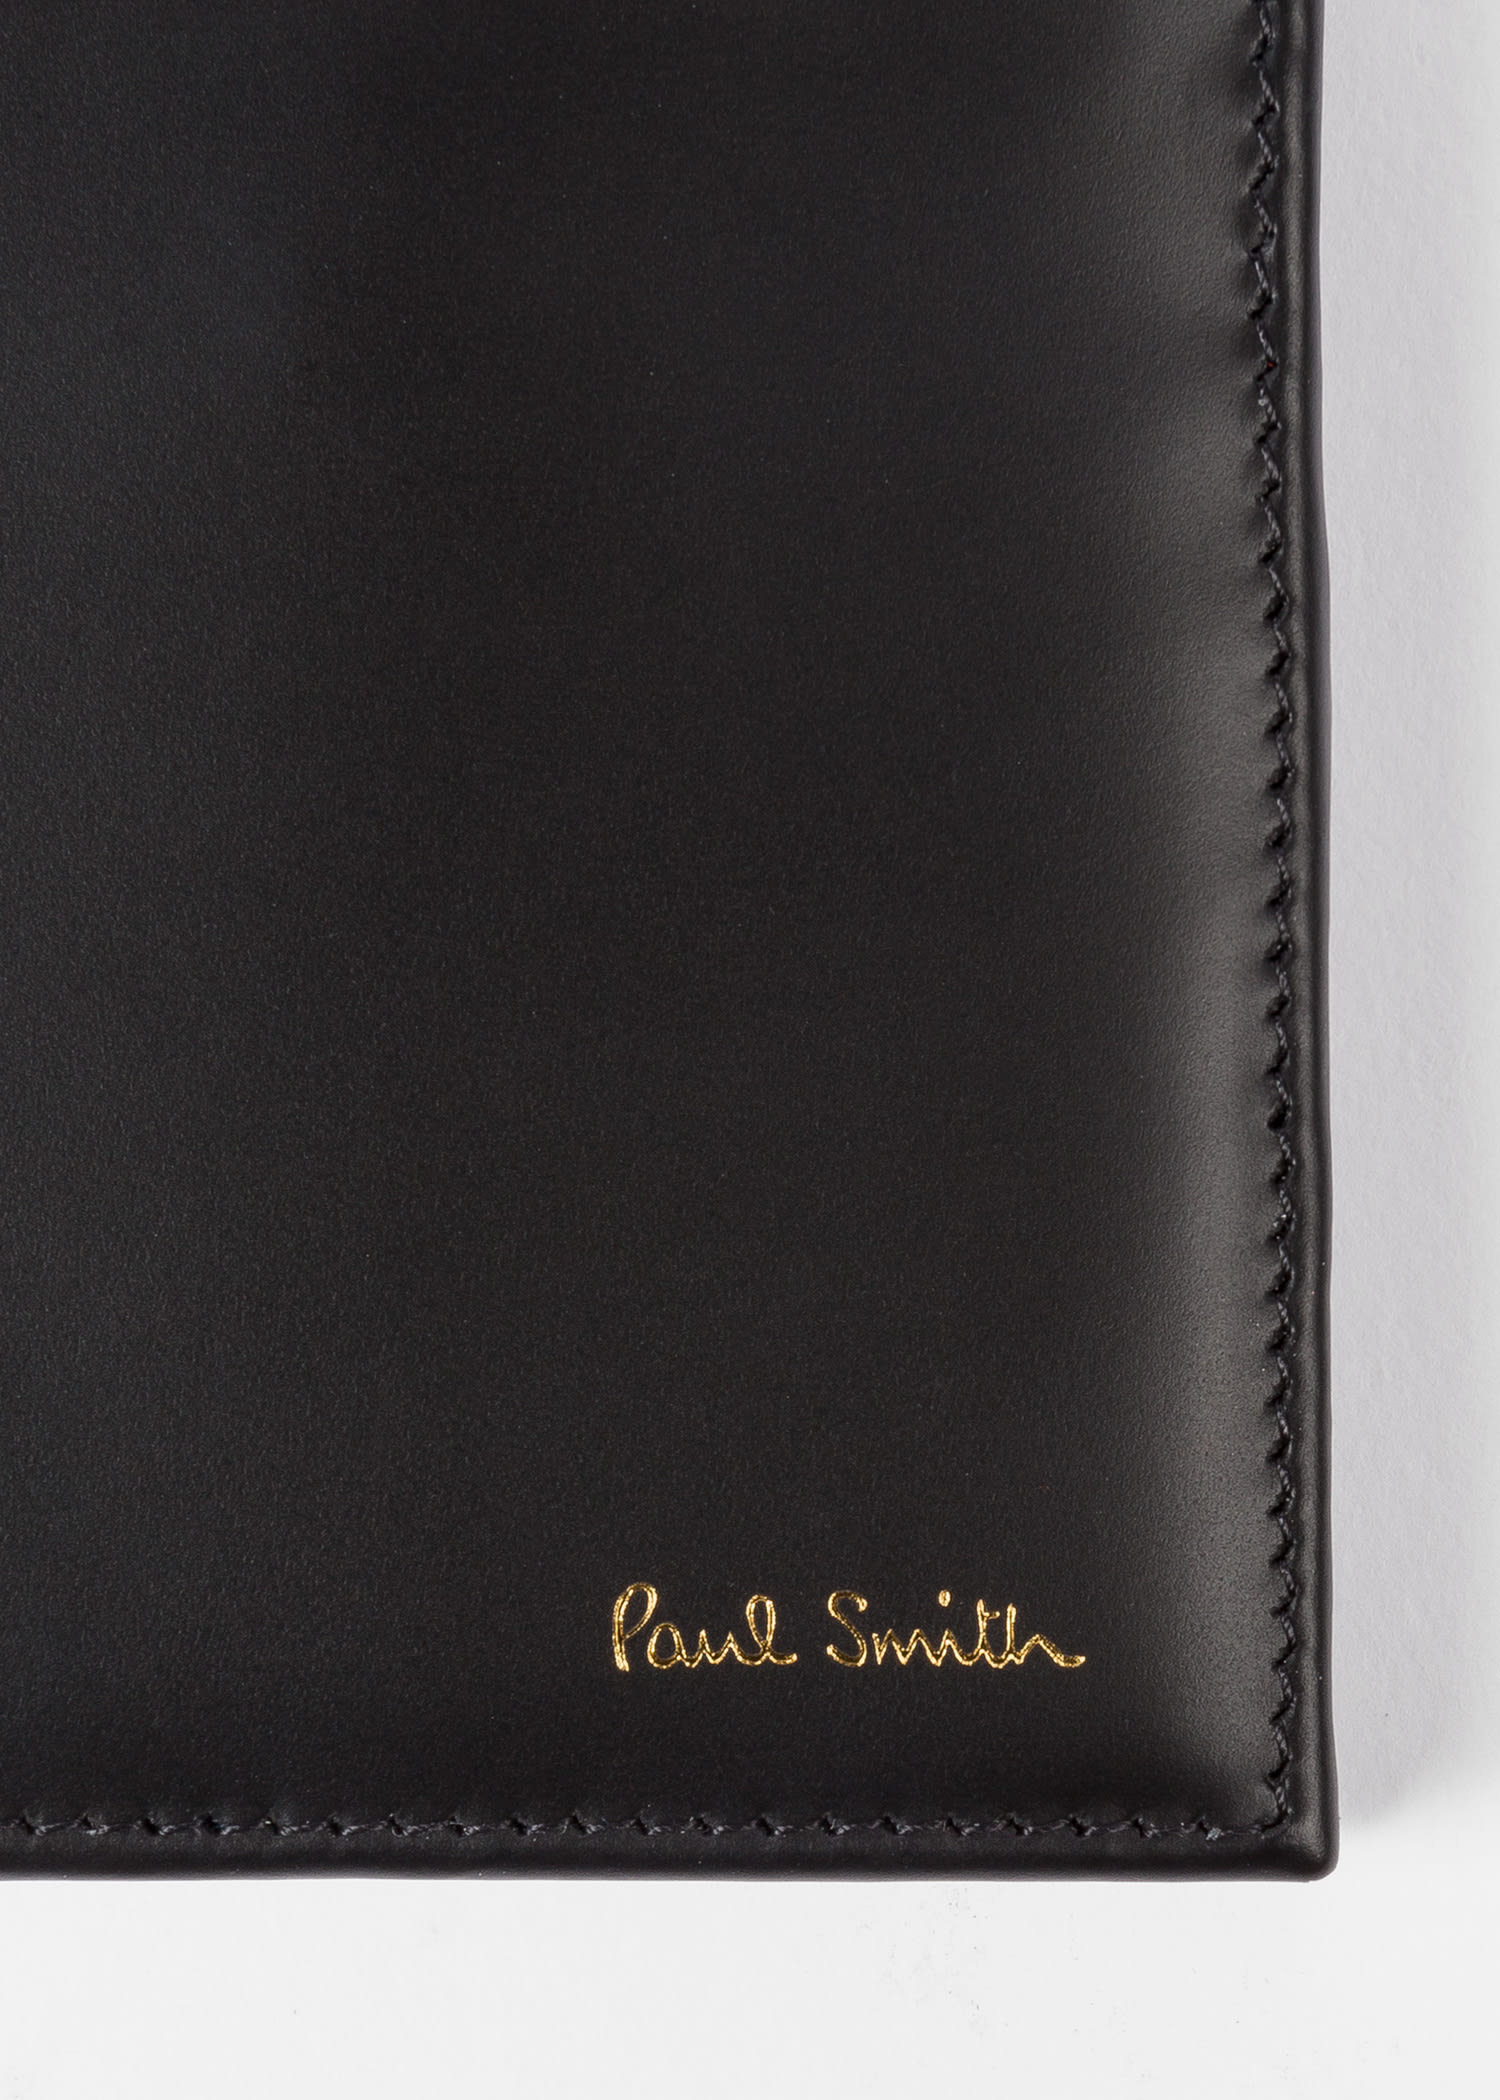 Paul Smith Homme deux volets Portefeuille Mini Rapha en cuir italien noir BNWT RRP £ 180 